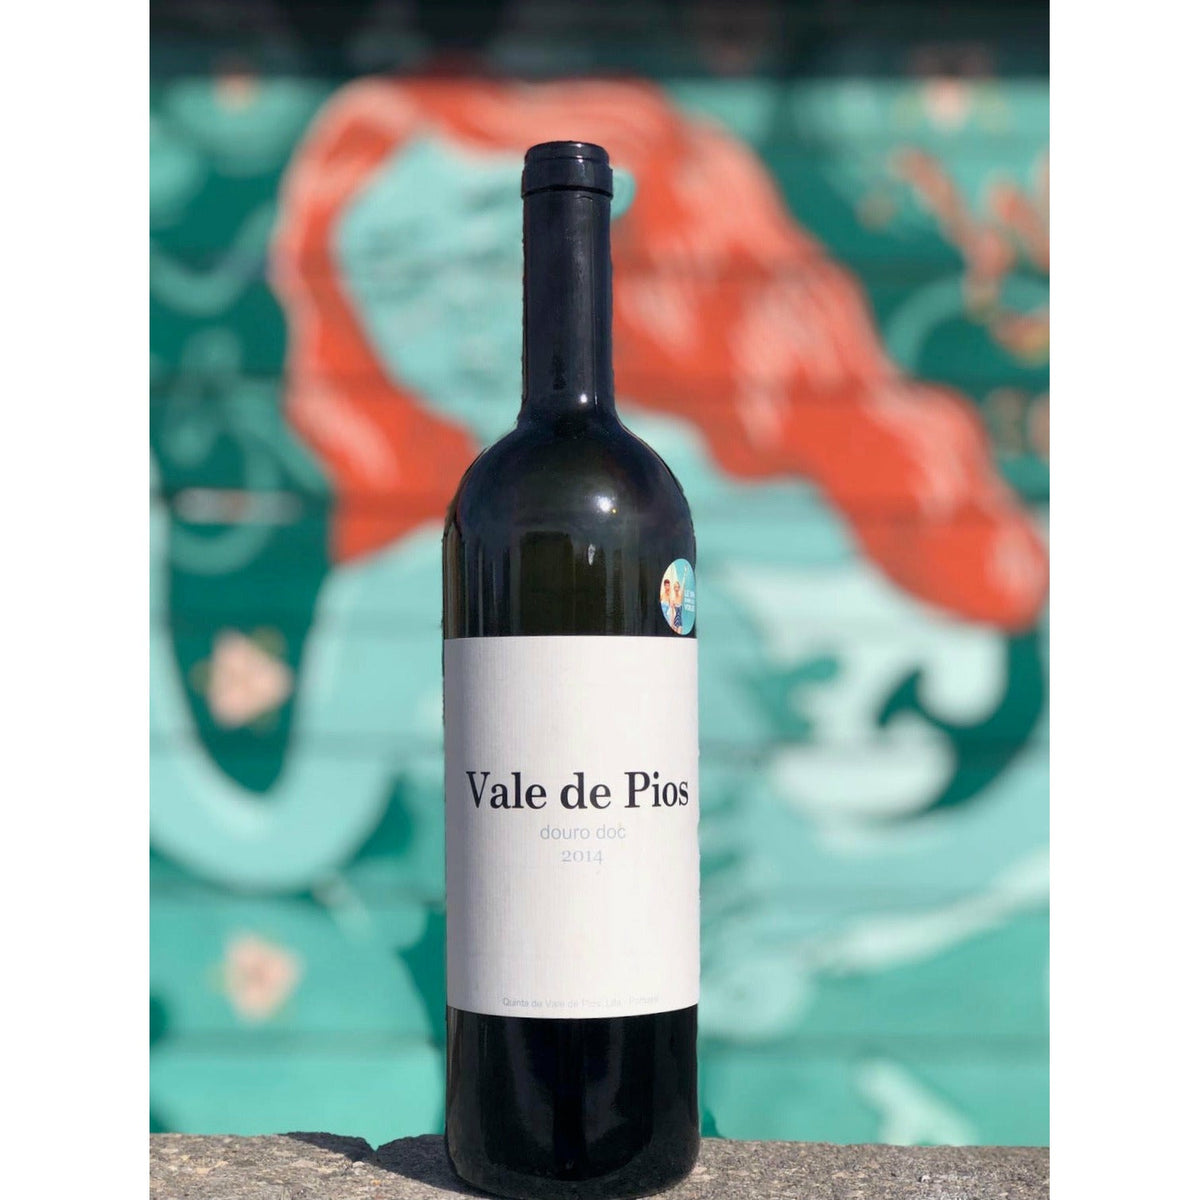 Bouteille de vin rouge biologique du domaine Vale de Pios au Portugal: Vale de Pios, doc douro. (Image: 1 sur 2).